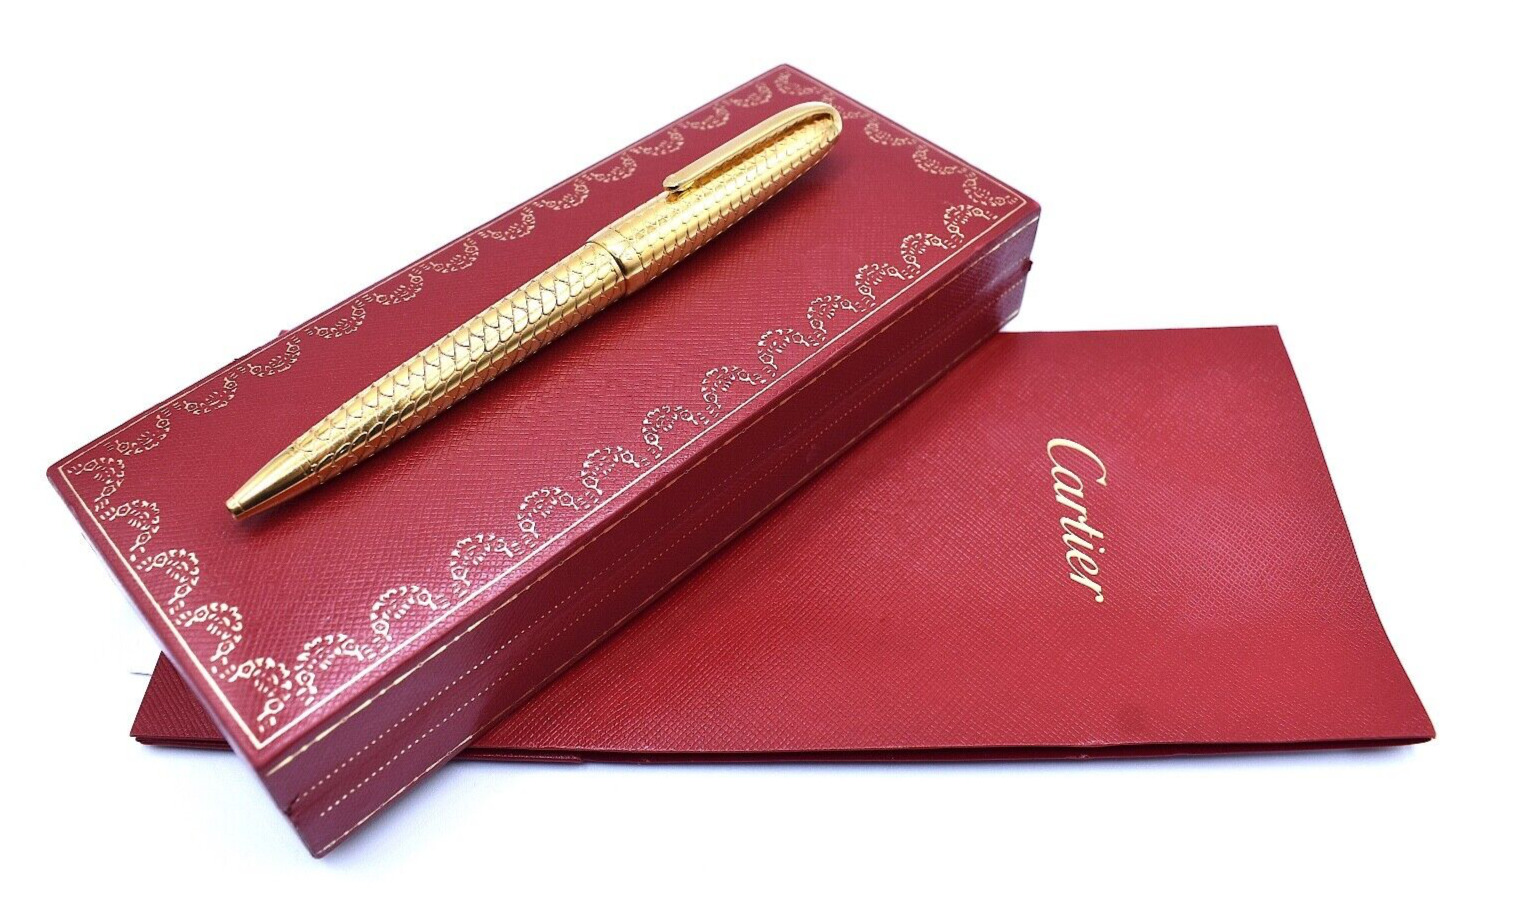 Cartier La Dona De Louis Cartier Limited Edition Ballpoint Pen 0113/1847